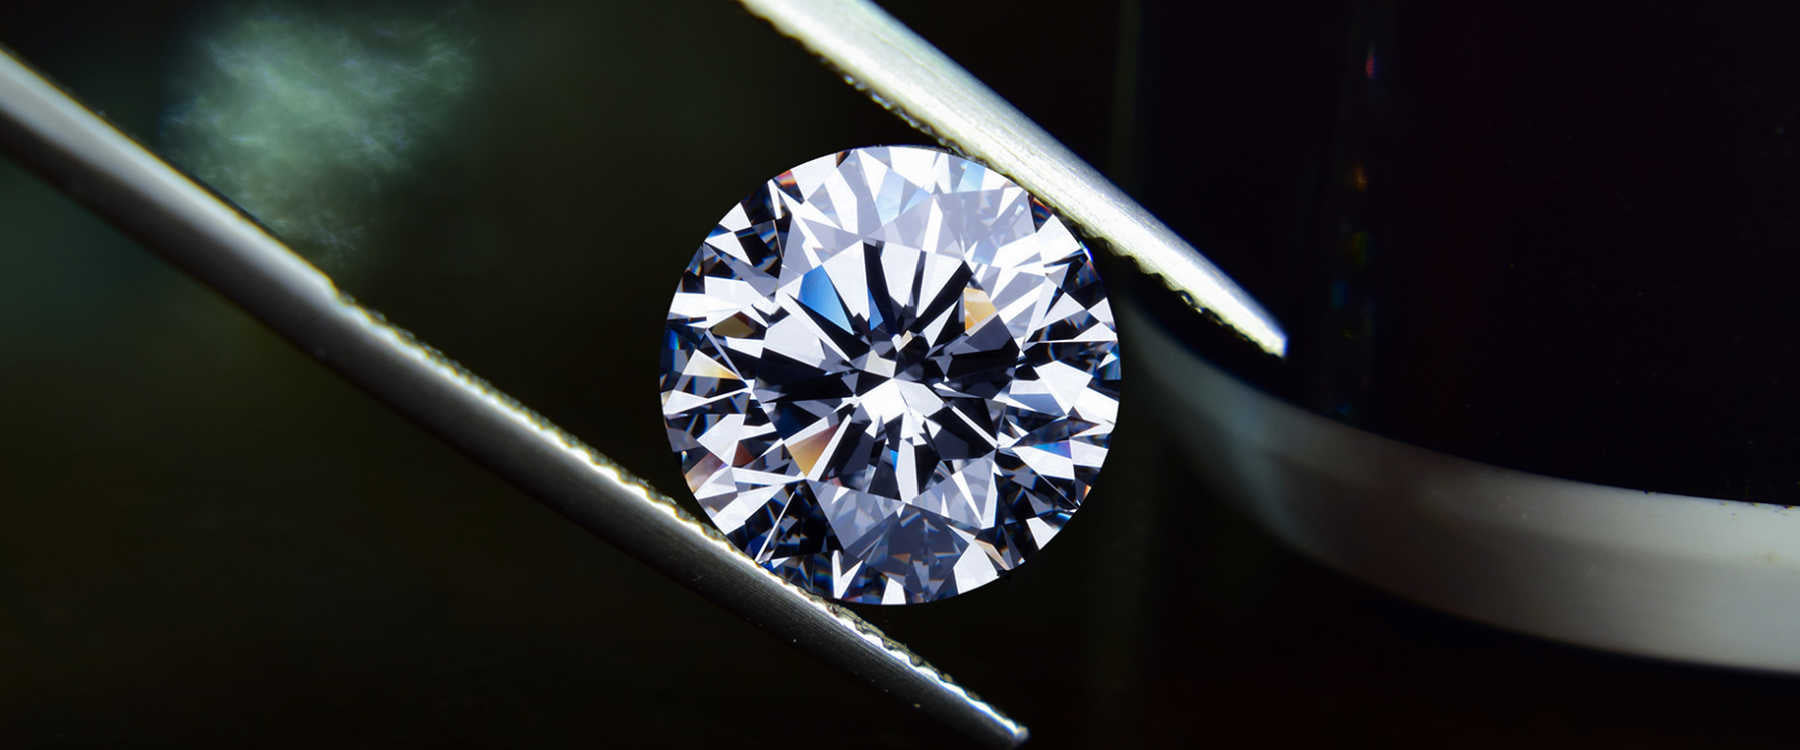 A diamond being held by tweezers